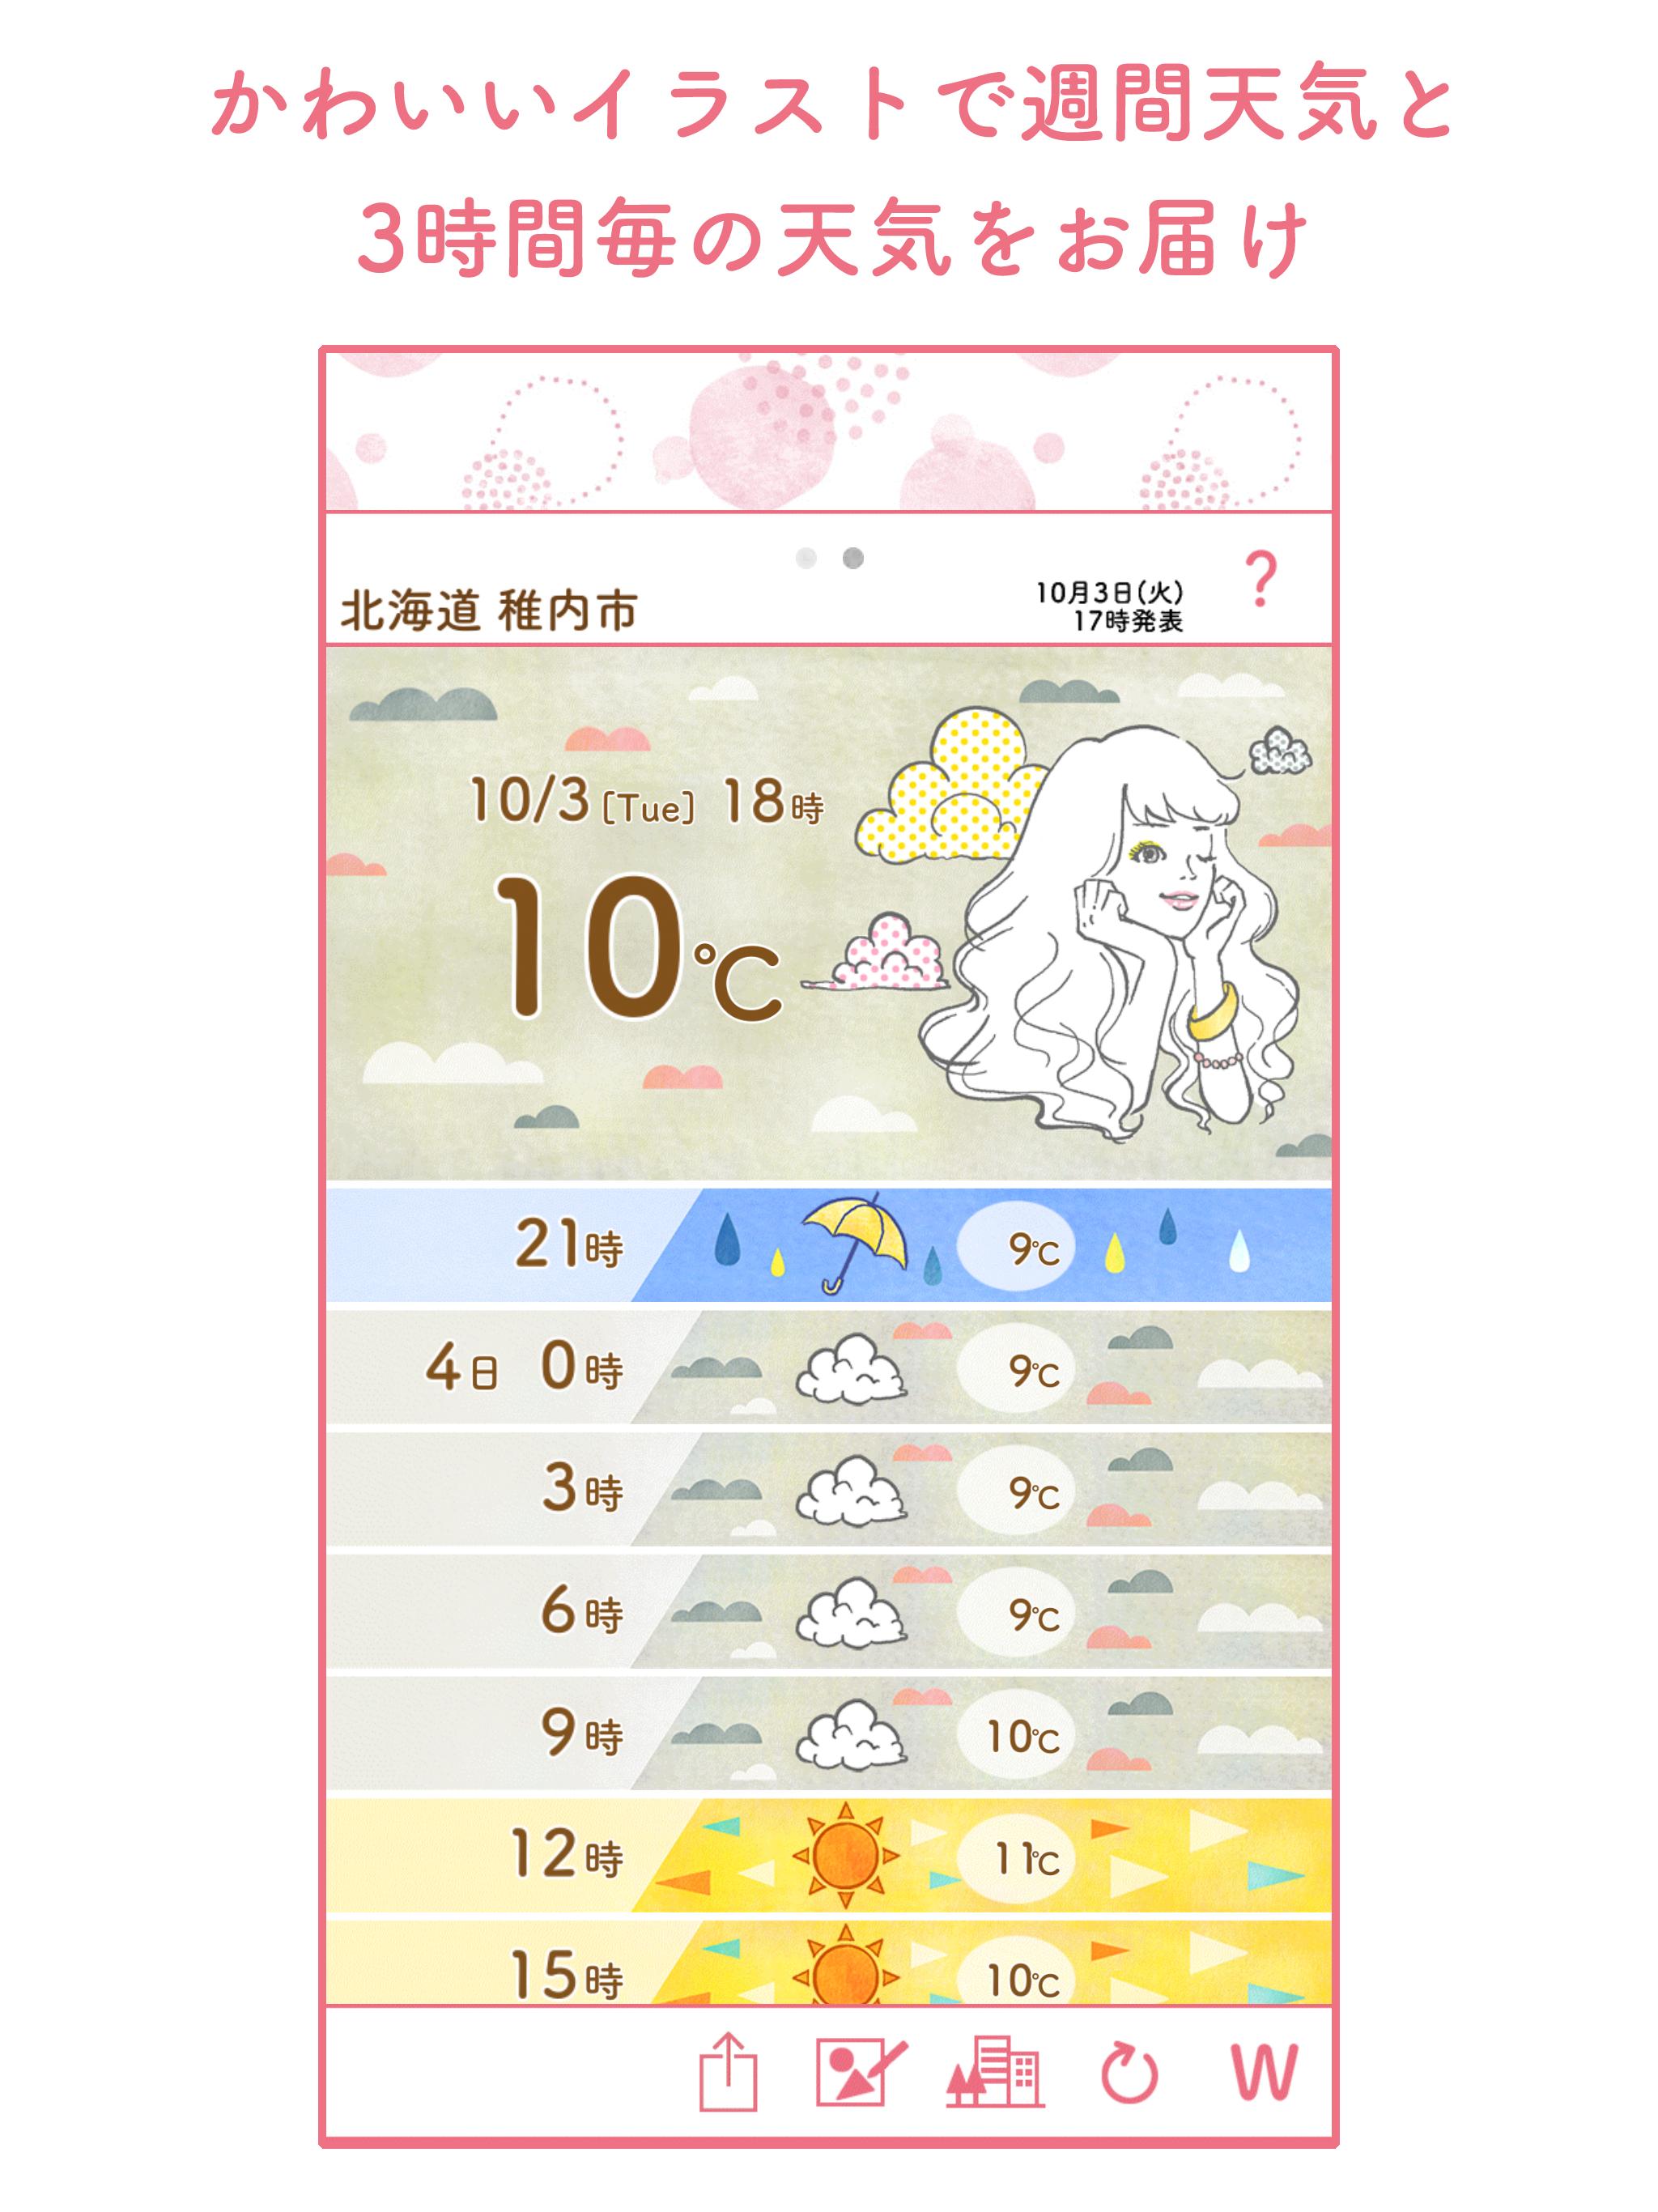 かわいい天気予報3 For Android Apk Download